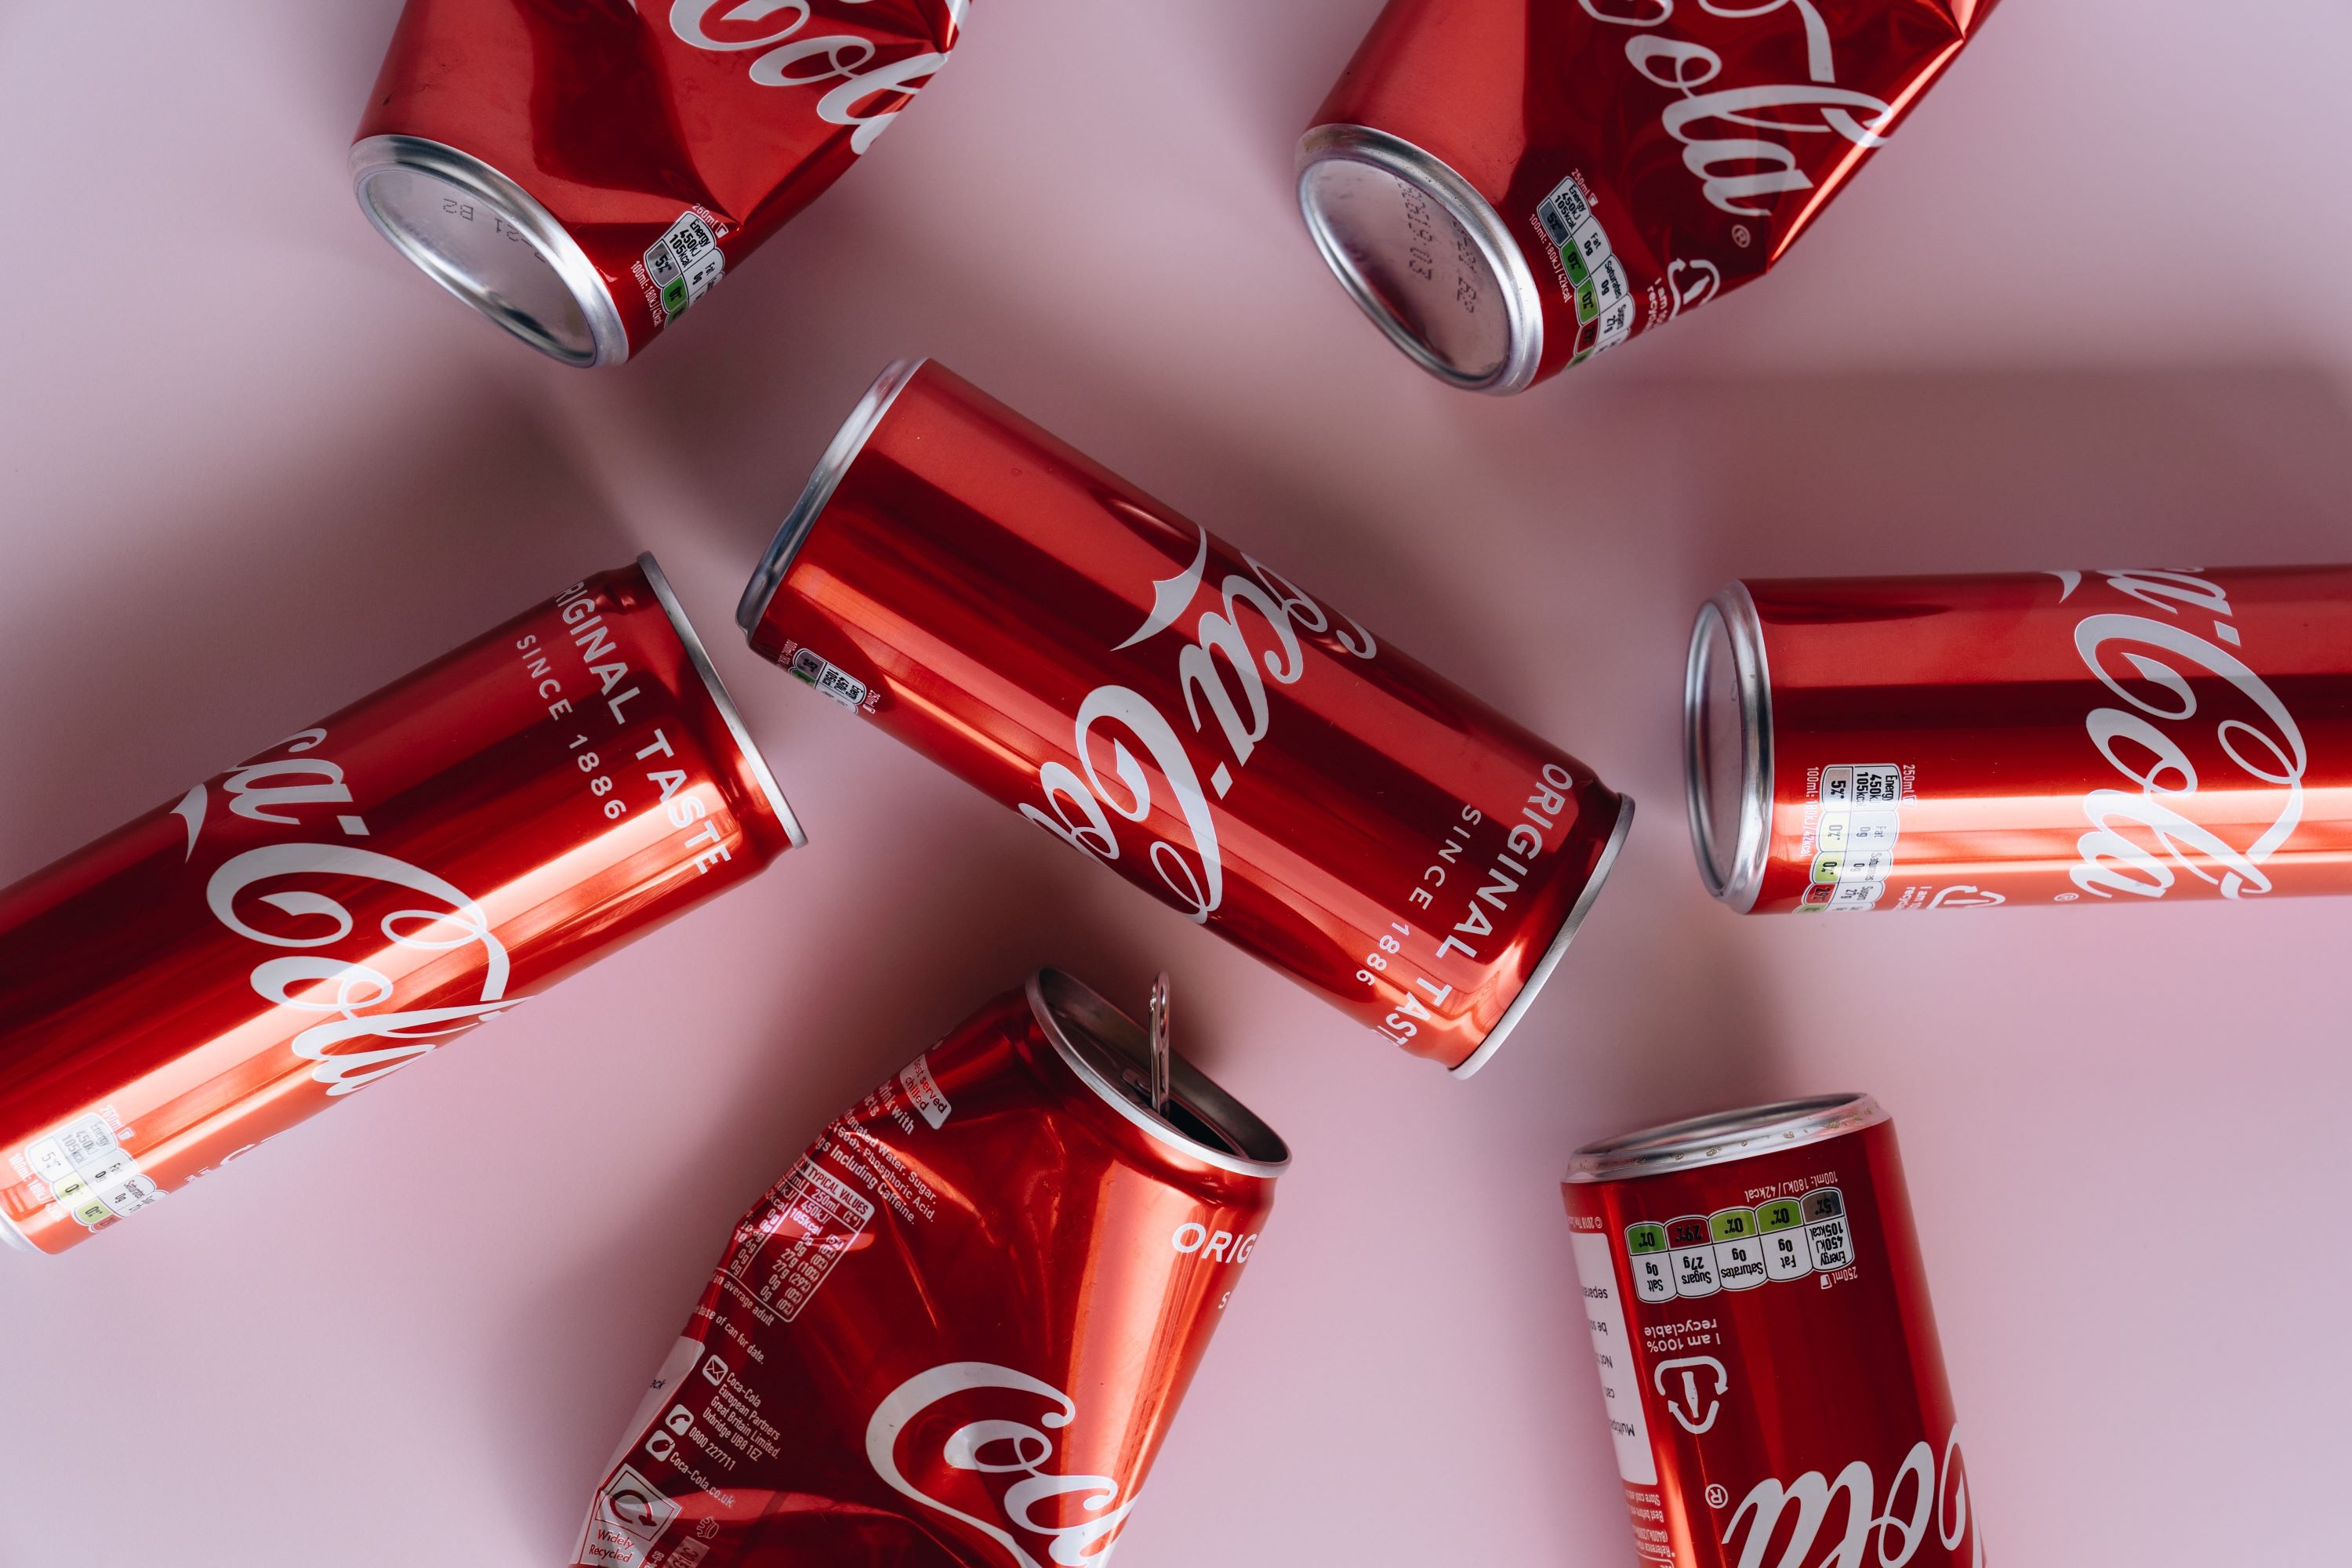 Coca-cola branding